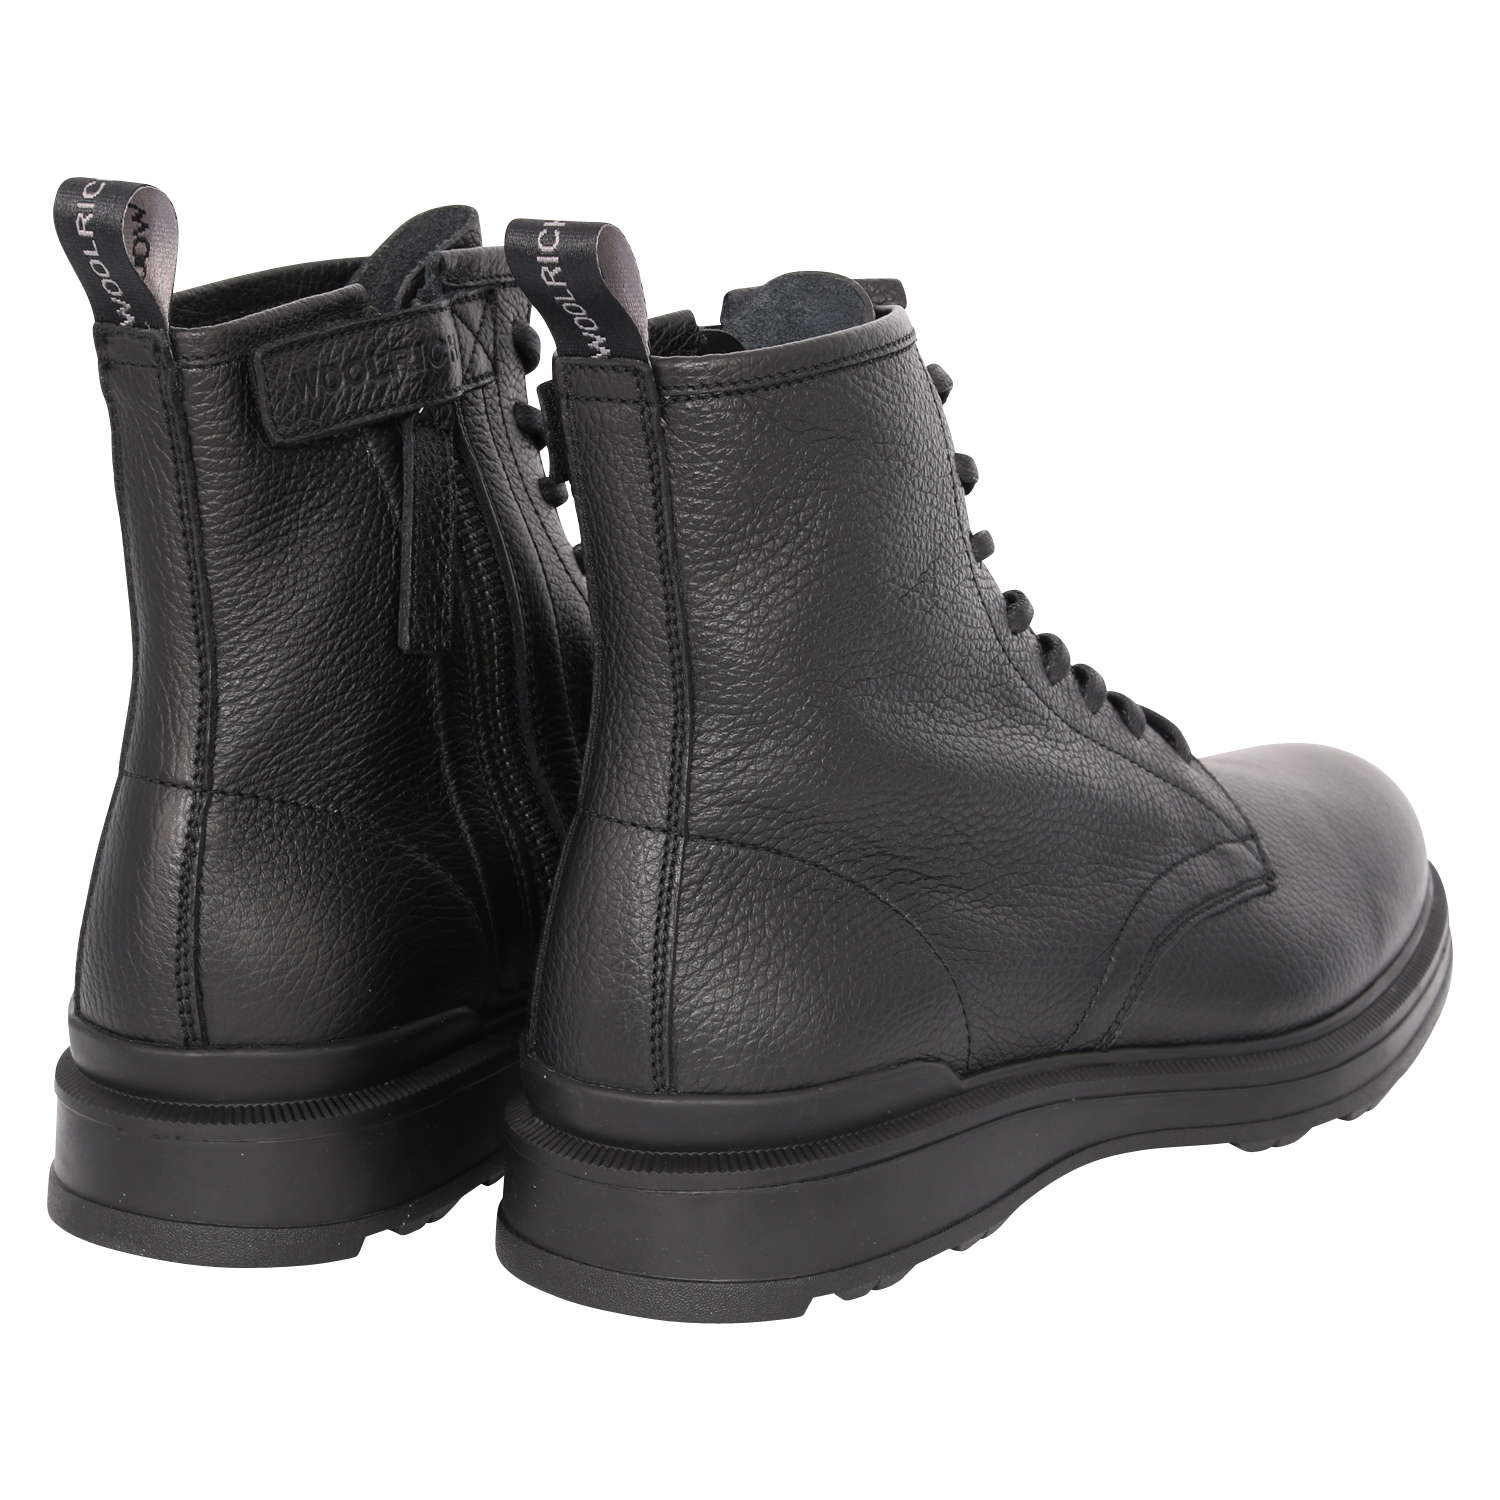 Woolrich Combat City Boots Blubber Black